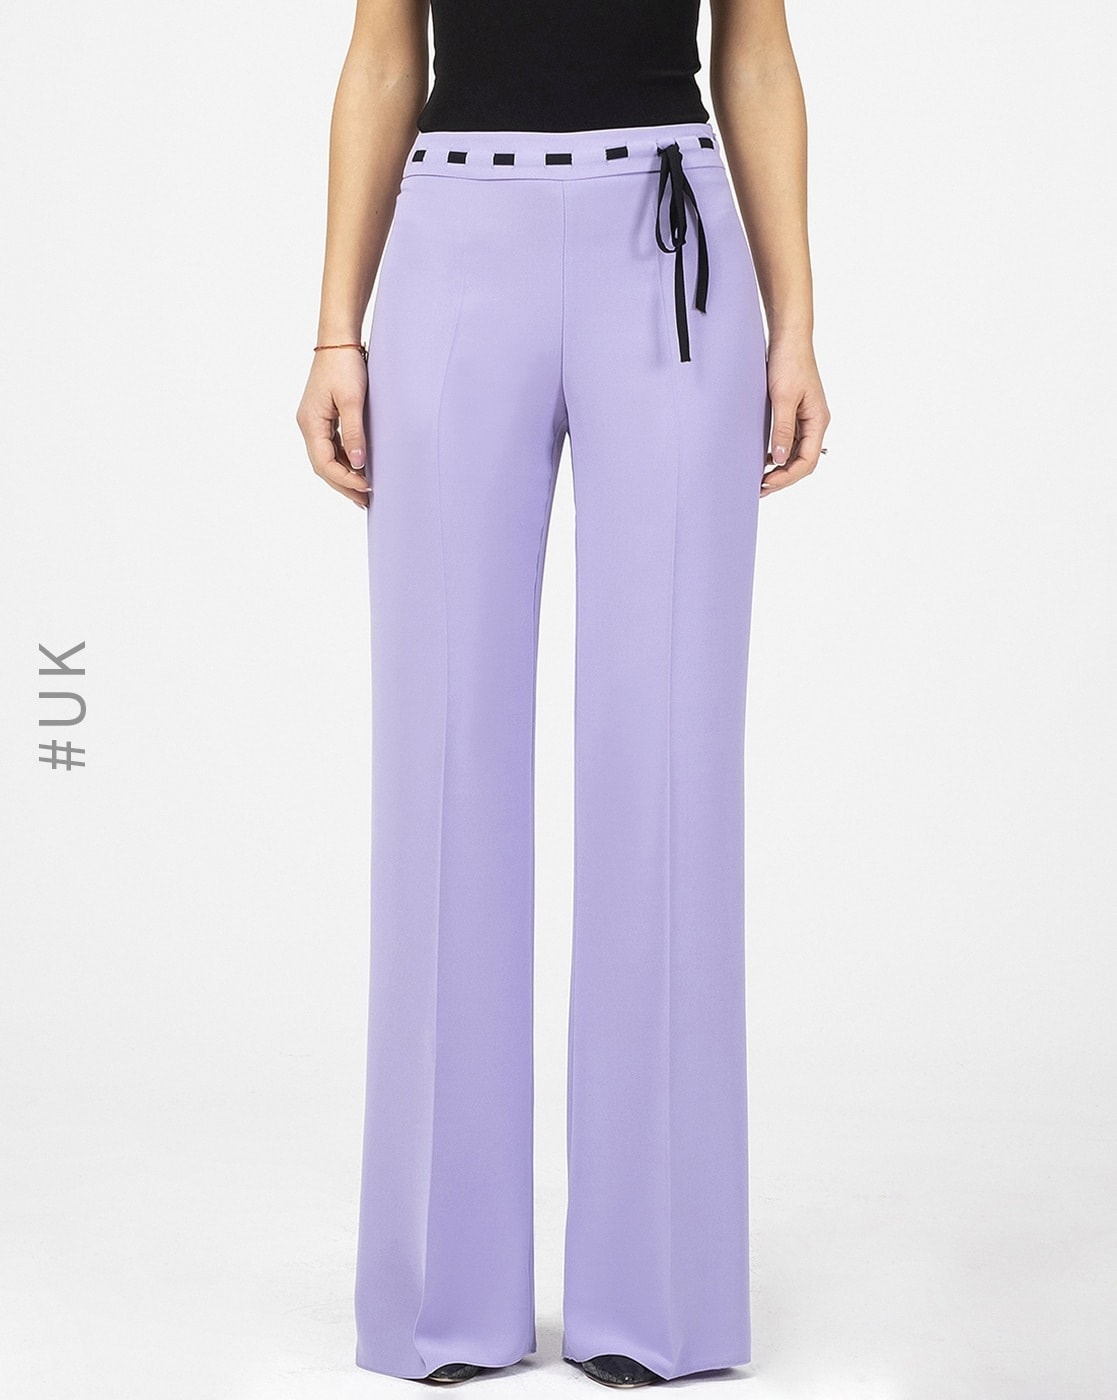 Buy Purple Trousers  Pants for Women by YLONDON Online  Ajiocom